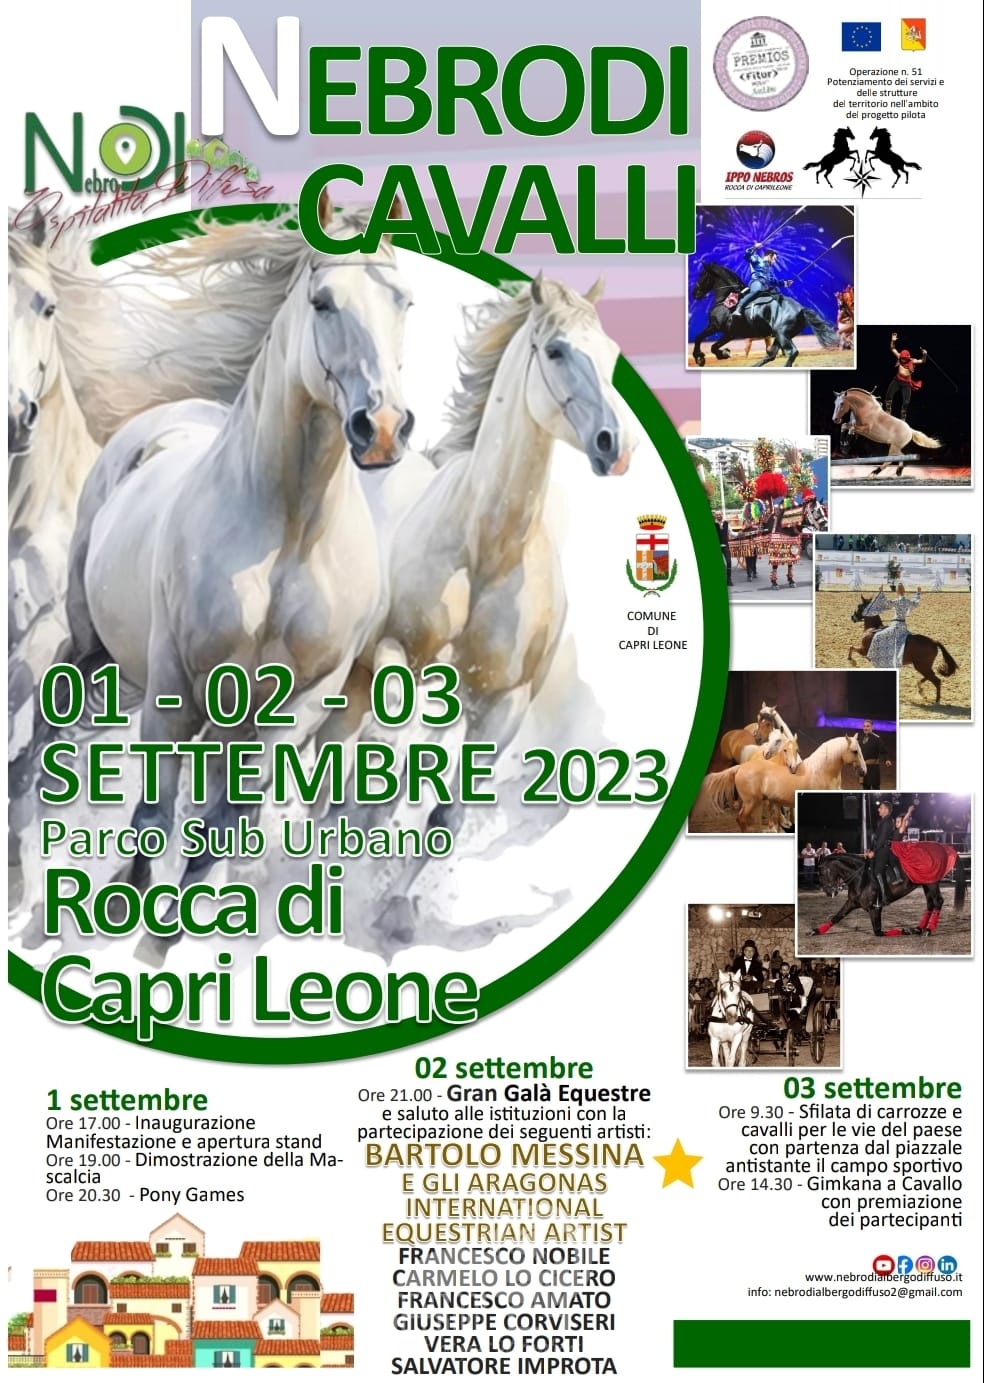 Capri Leone – Ospitalità diffusa, al via la tre giorni di “Nebrodi Cavalli 2023”